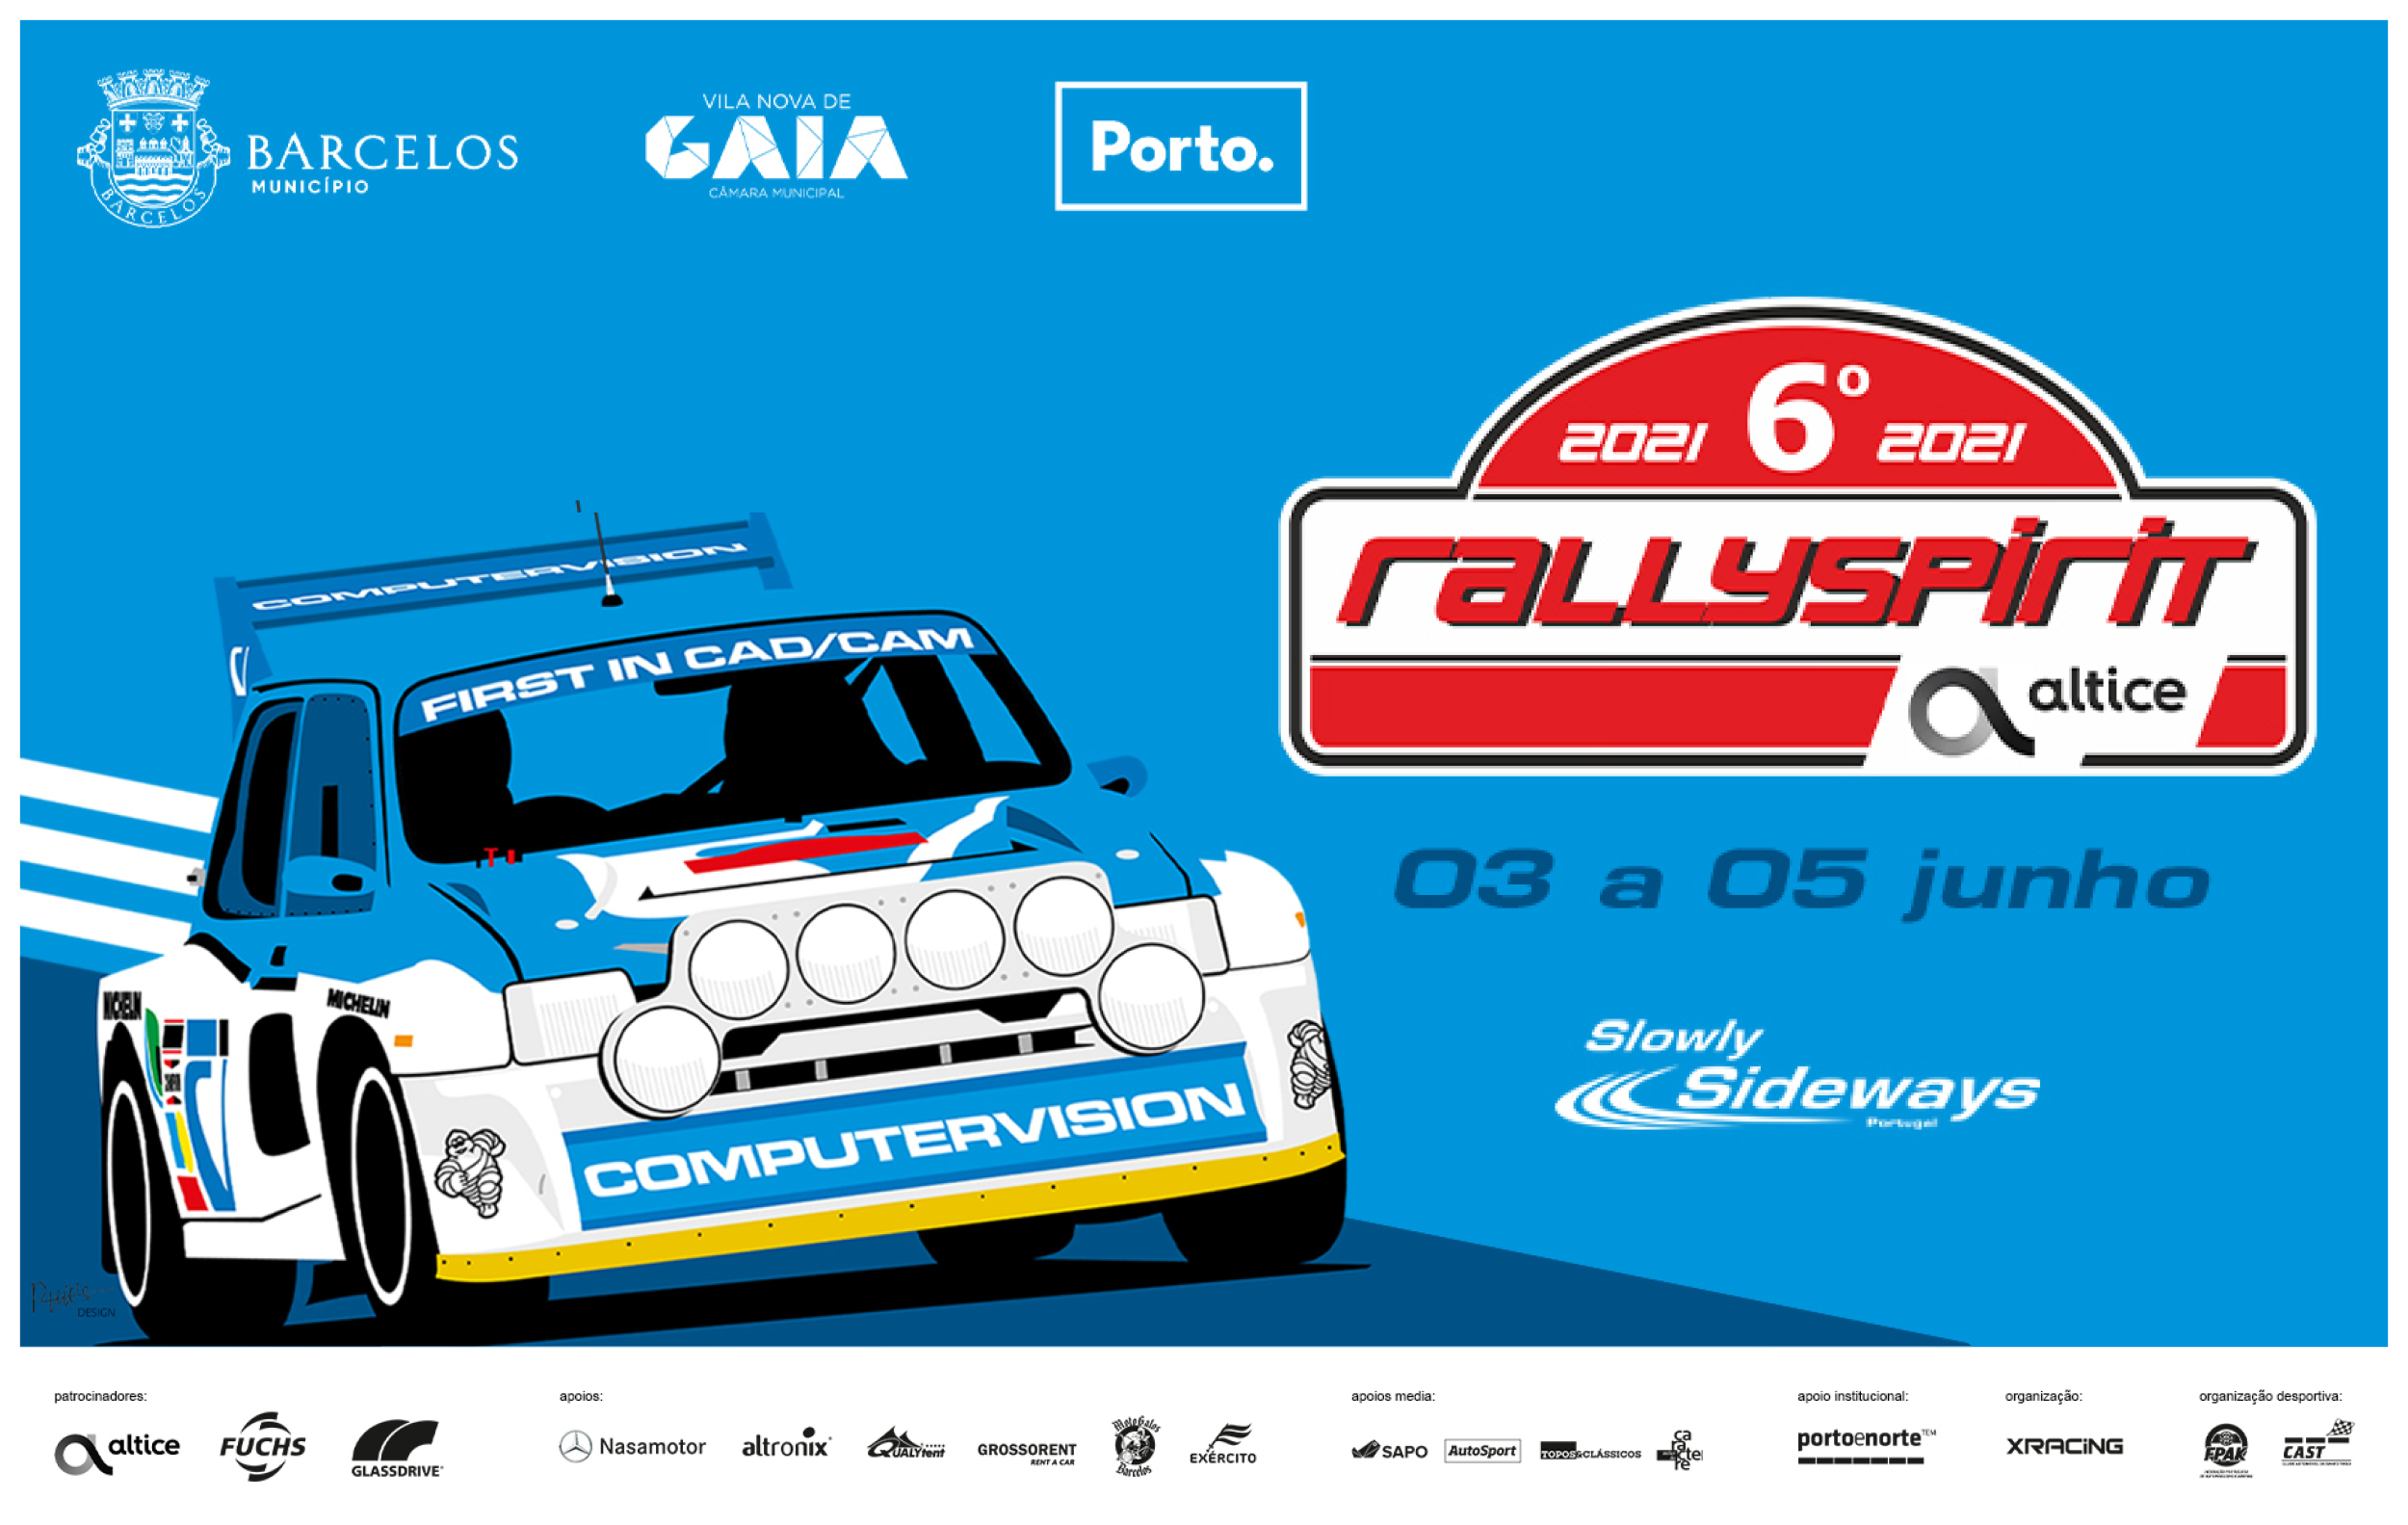 RallySpirit Altice 2021 em Barcelos